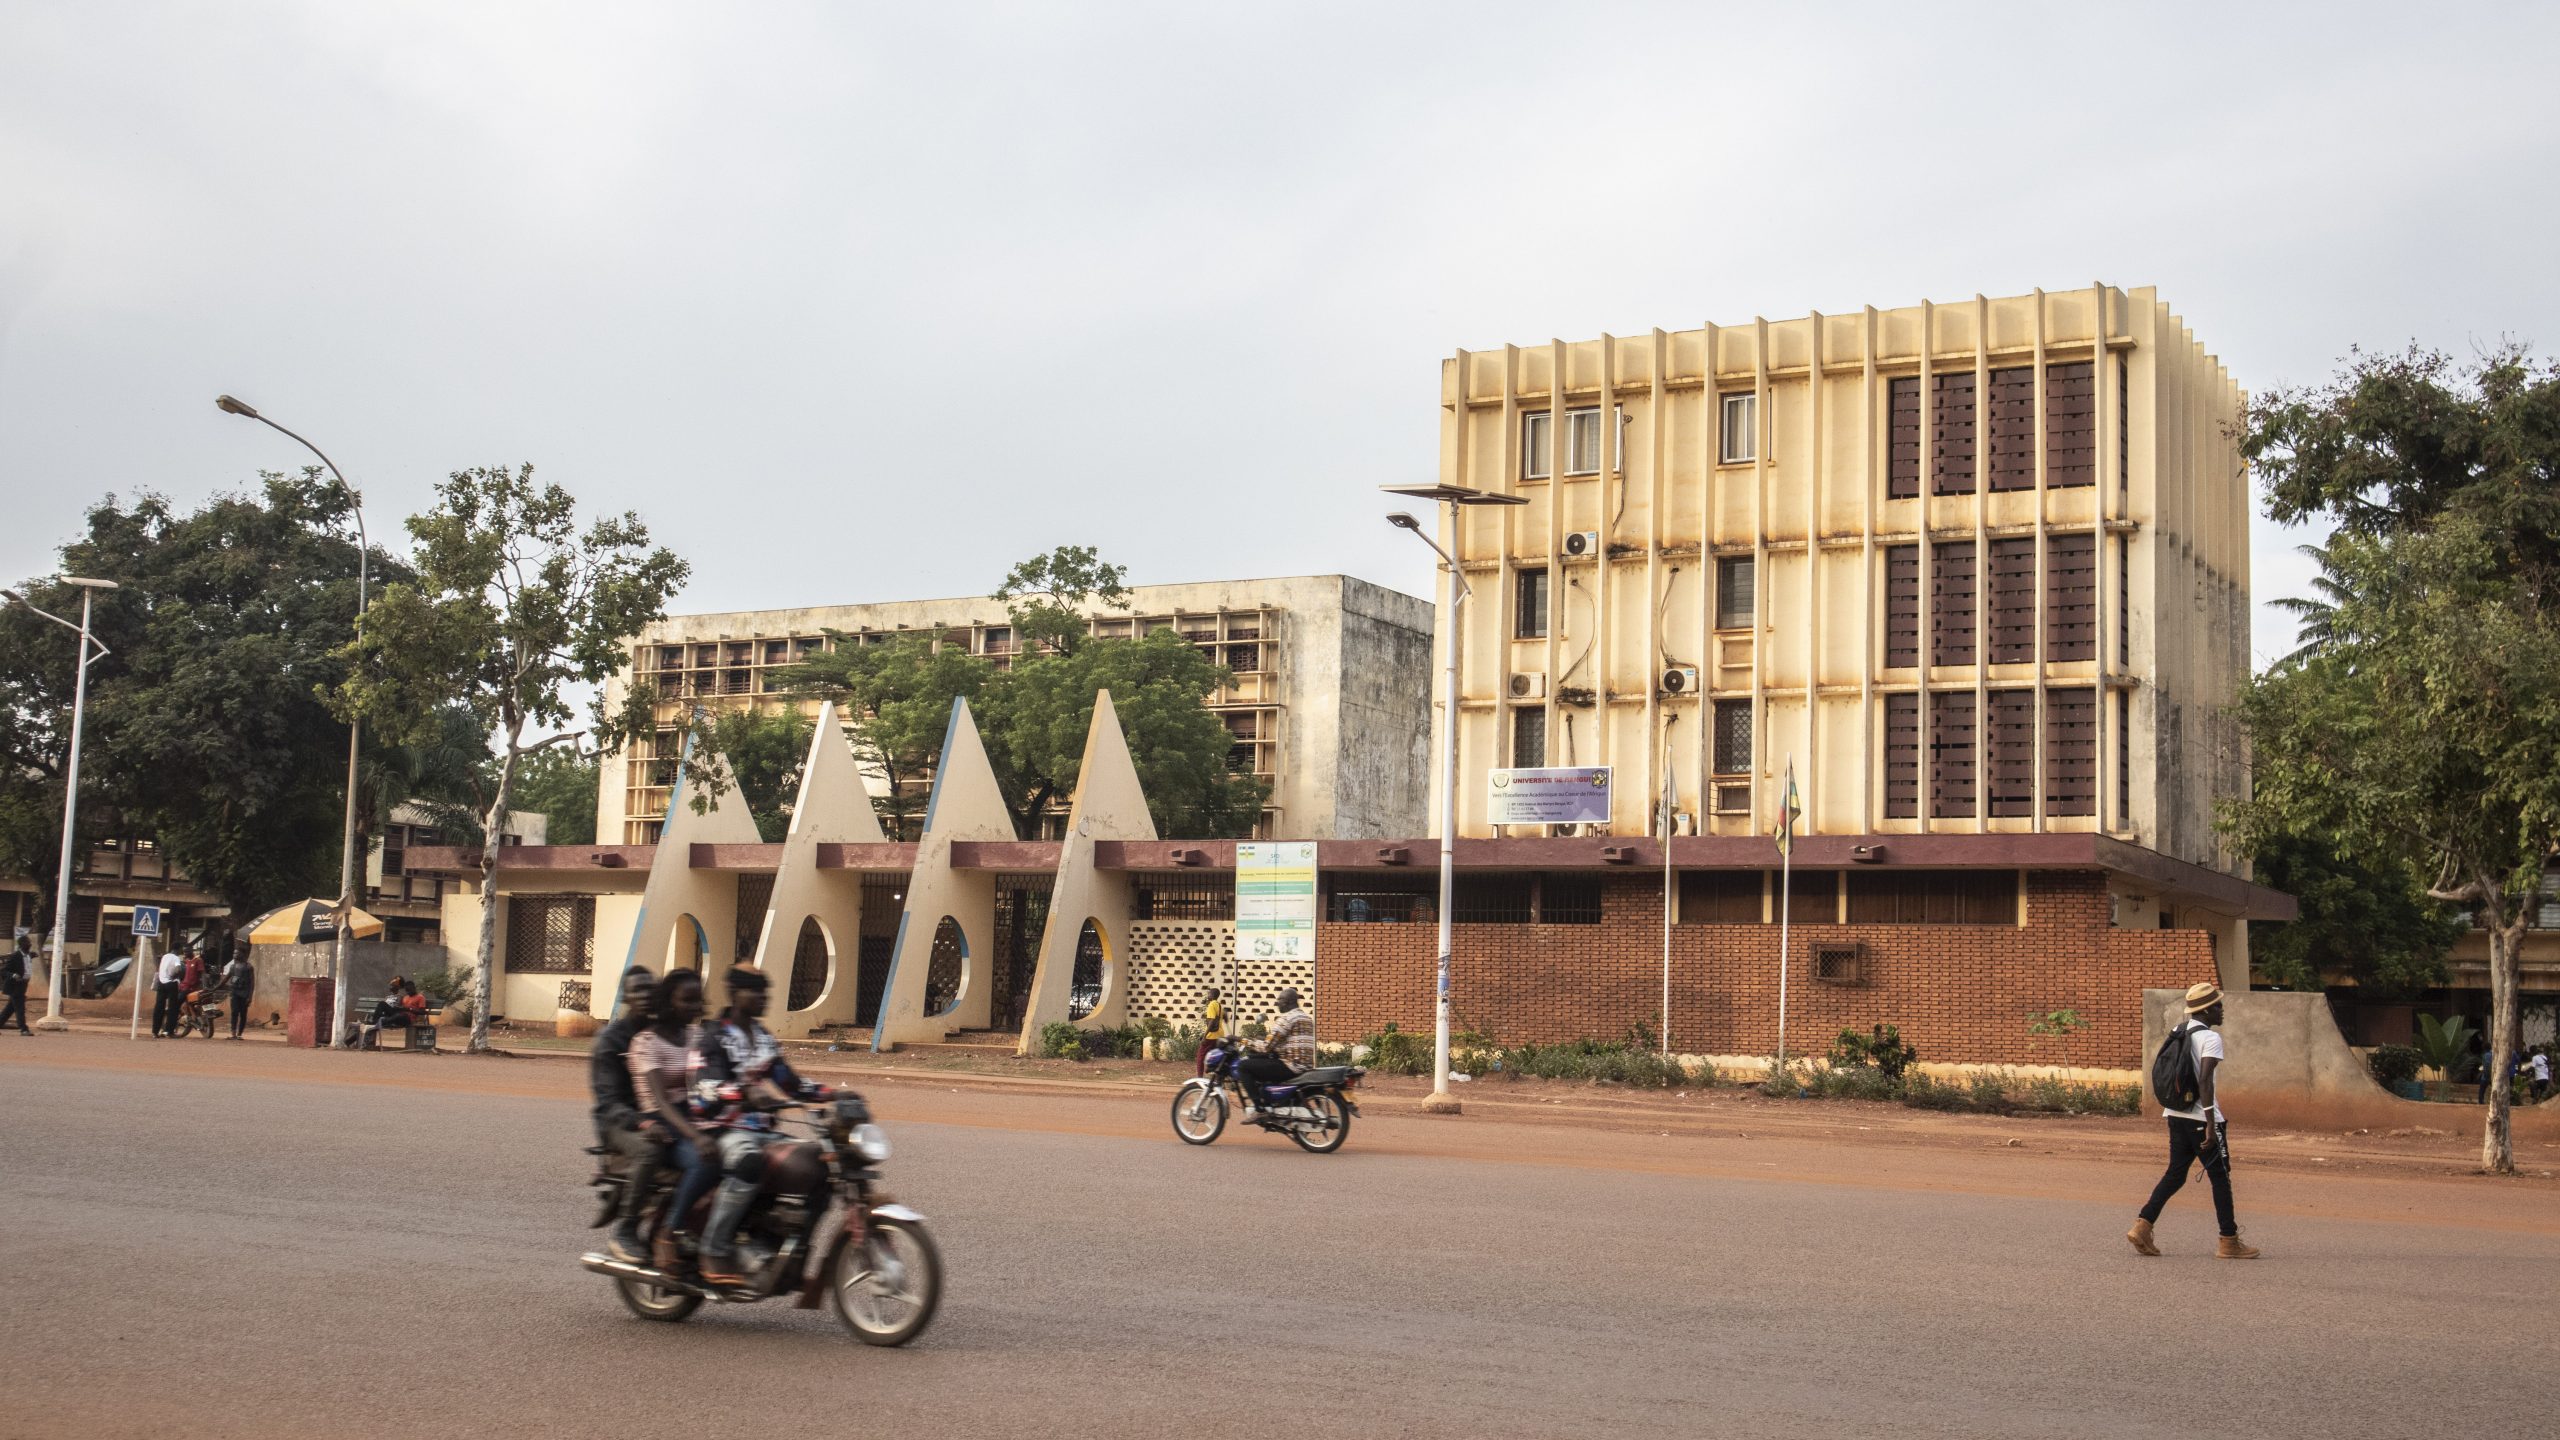 Centrafrique : l’OGDC saisit le ministère des Finances sur de possibles malversations financières à l’Université de Bangui